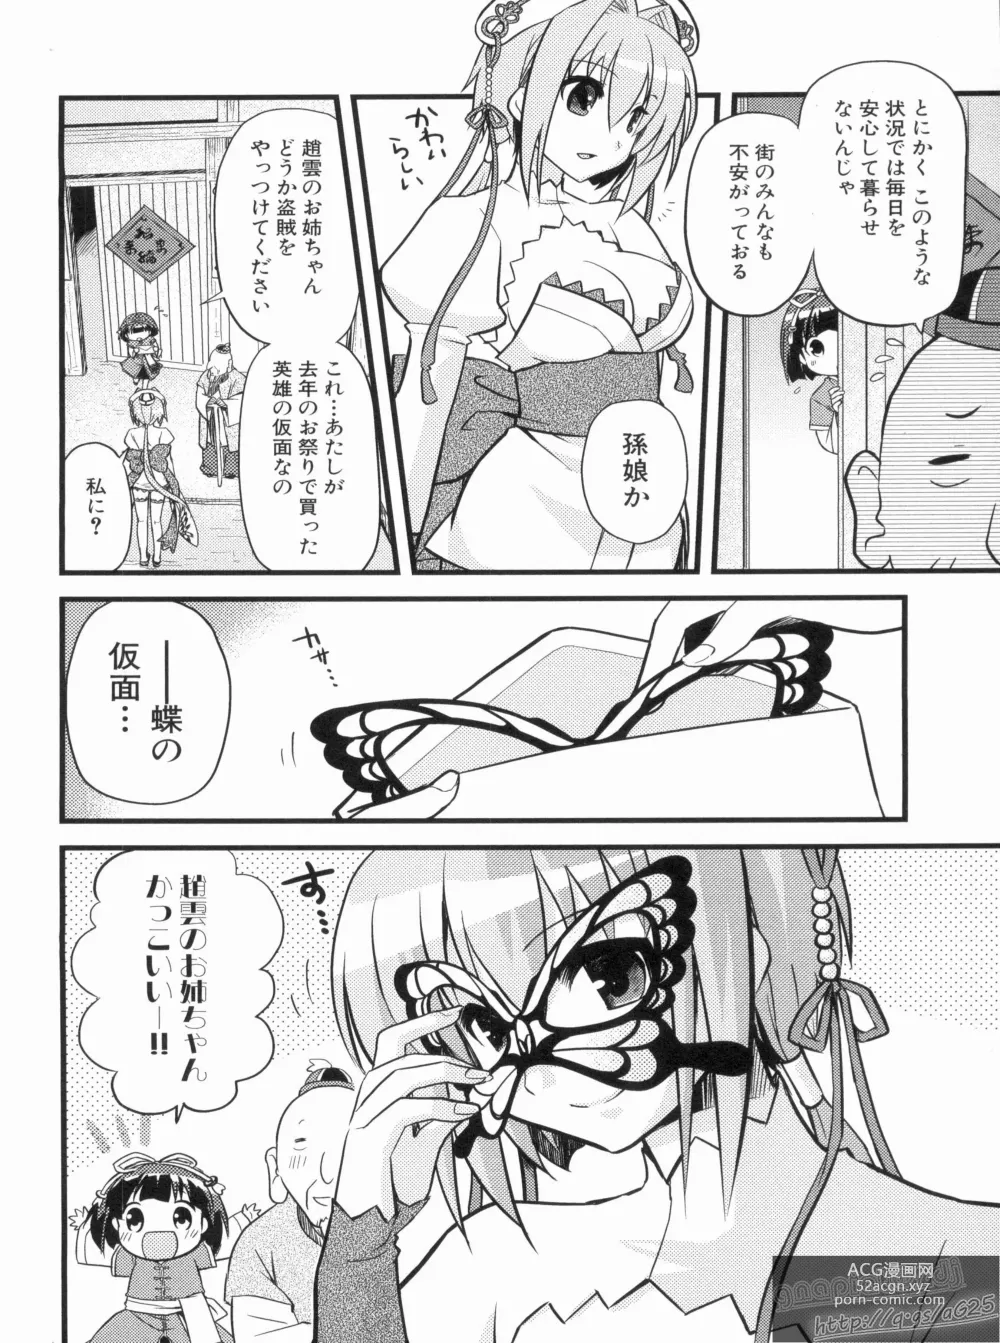 Page 16 of manga Shin Koihime Musou Gaishi Saiten VOL.1